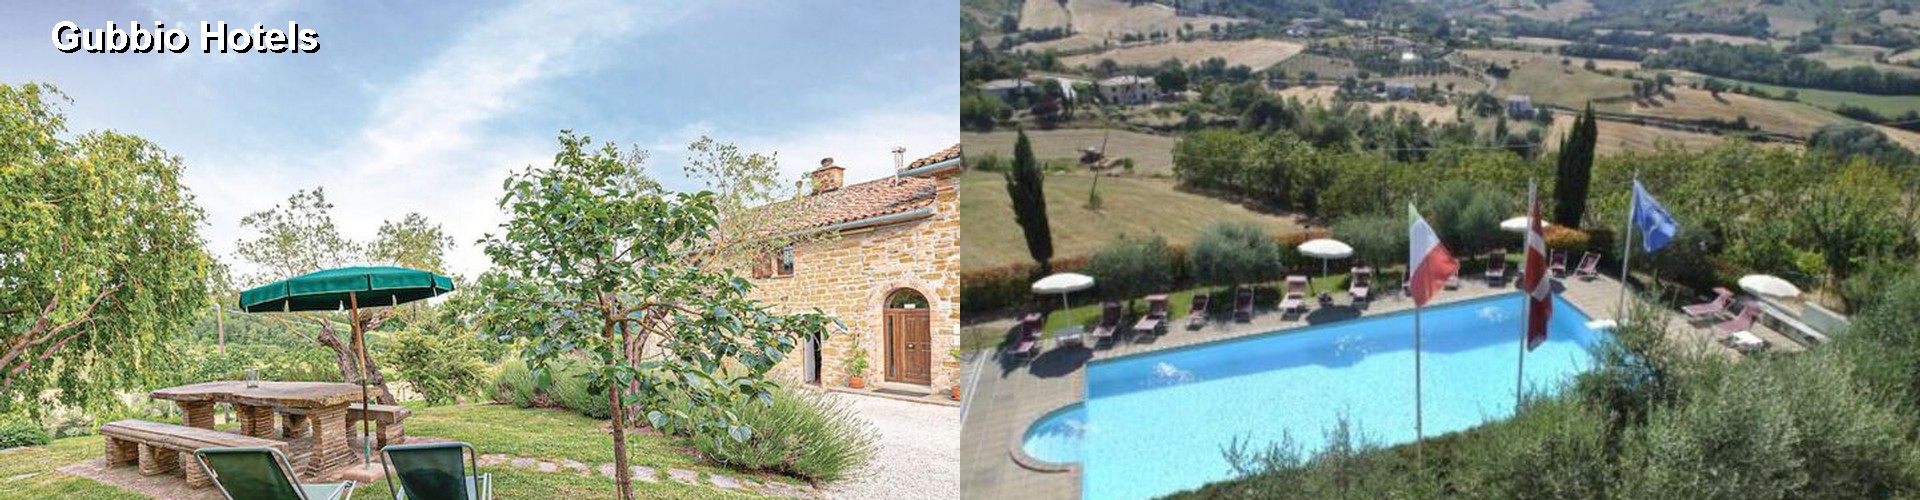 5 Best Hotels near Gubbio